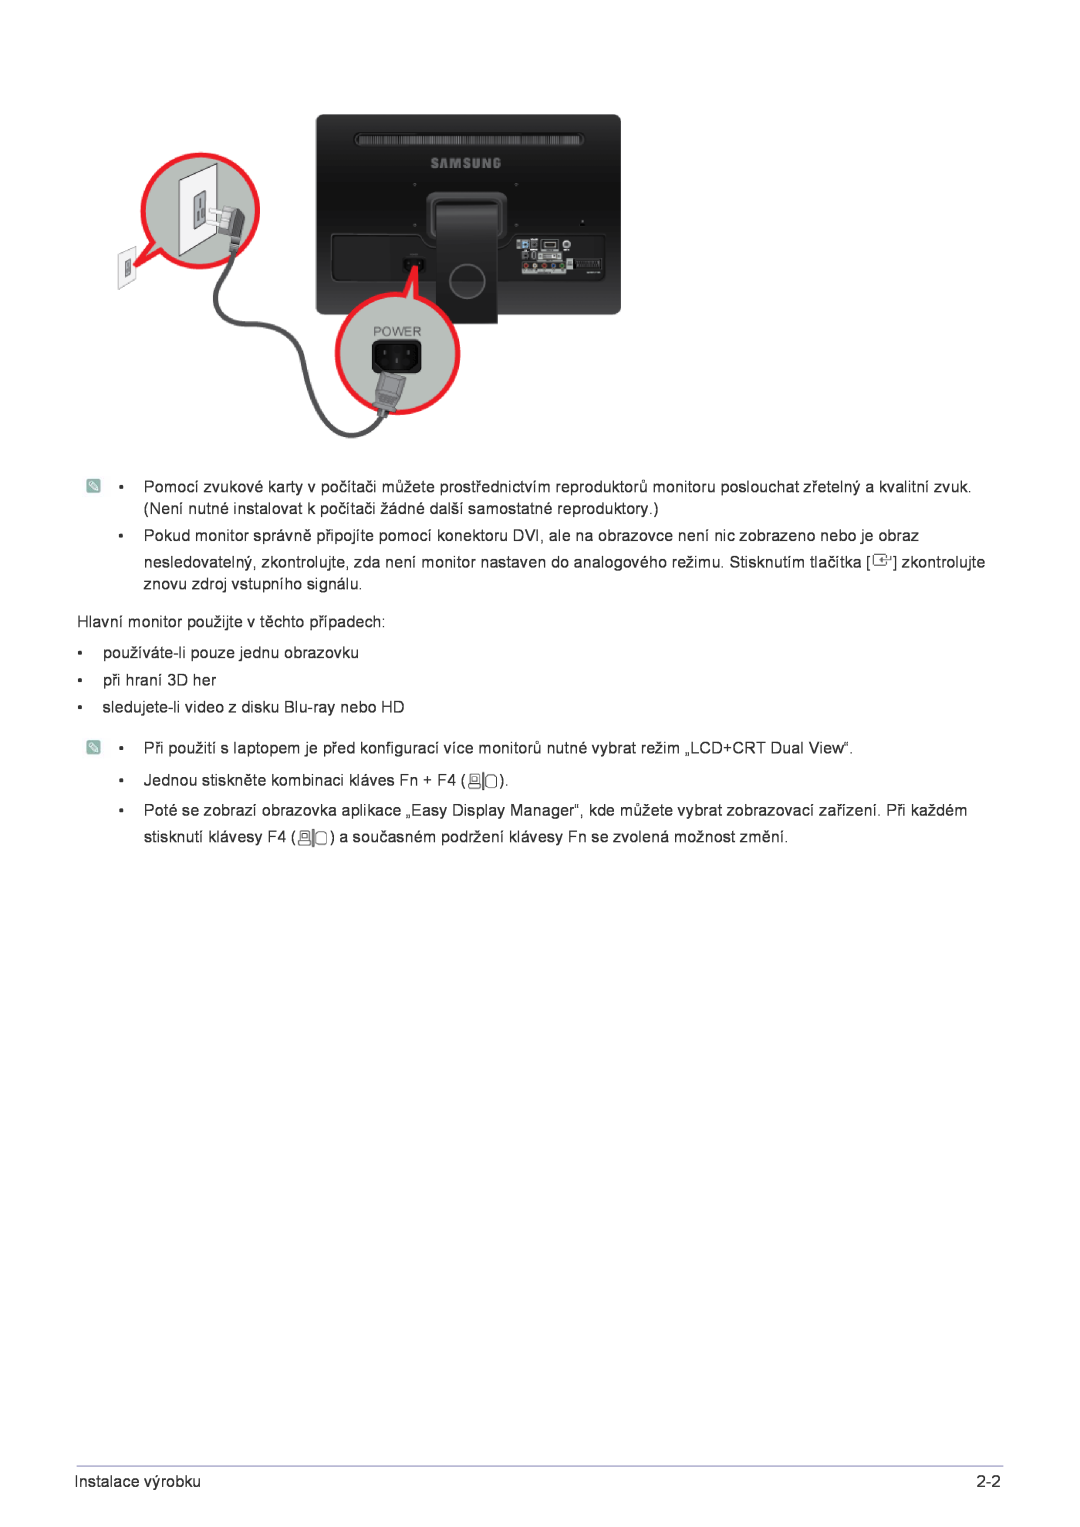 Samsung LS22FMDGF/EN manual Hlavní monitor použijte v těchto případech, používáte-li pouze jednu obrazovku při hraní 3D her 